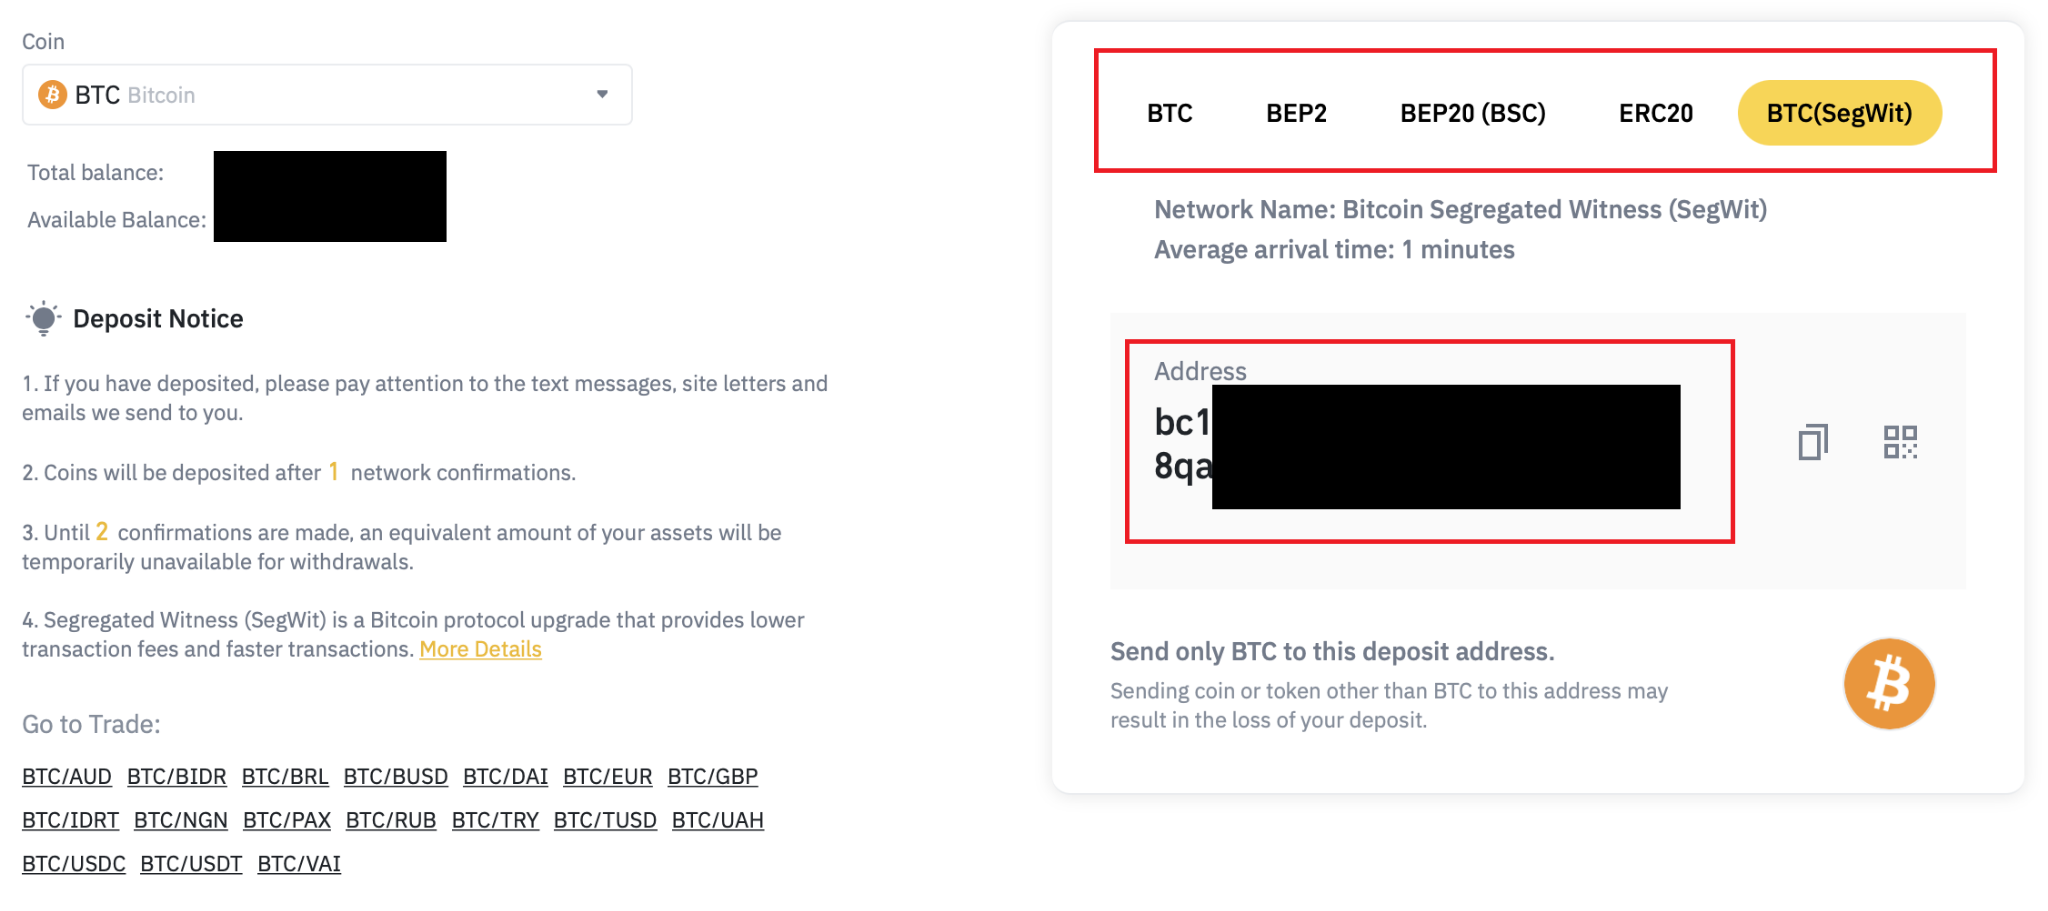 Địa chỉ ví Bitcoin Segregated Witness (SegWit) gốc với ký tự bắt đầu bằng “bc1”.